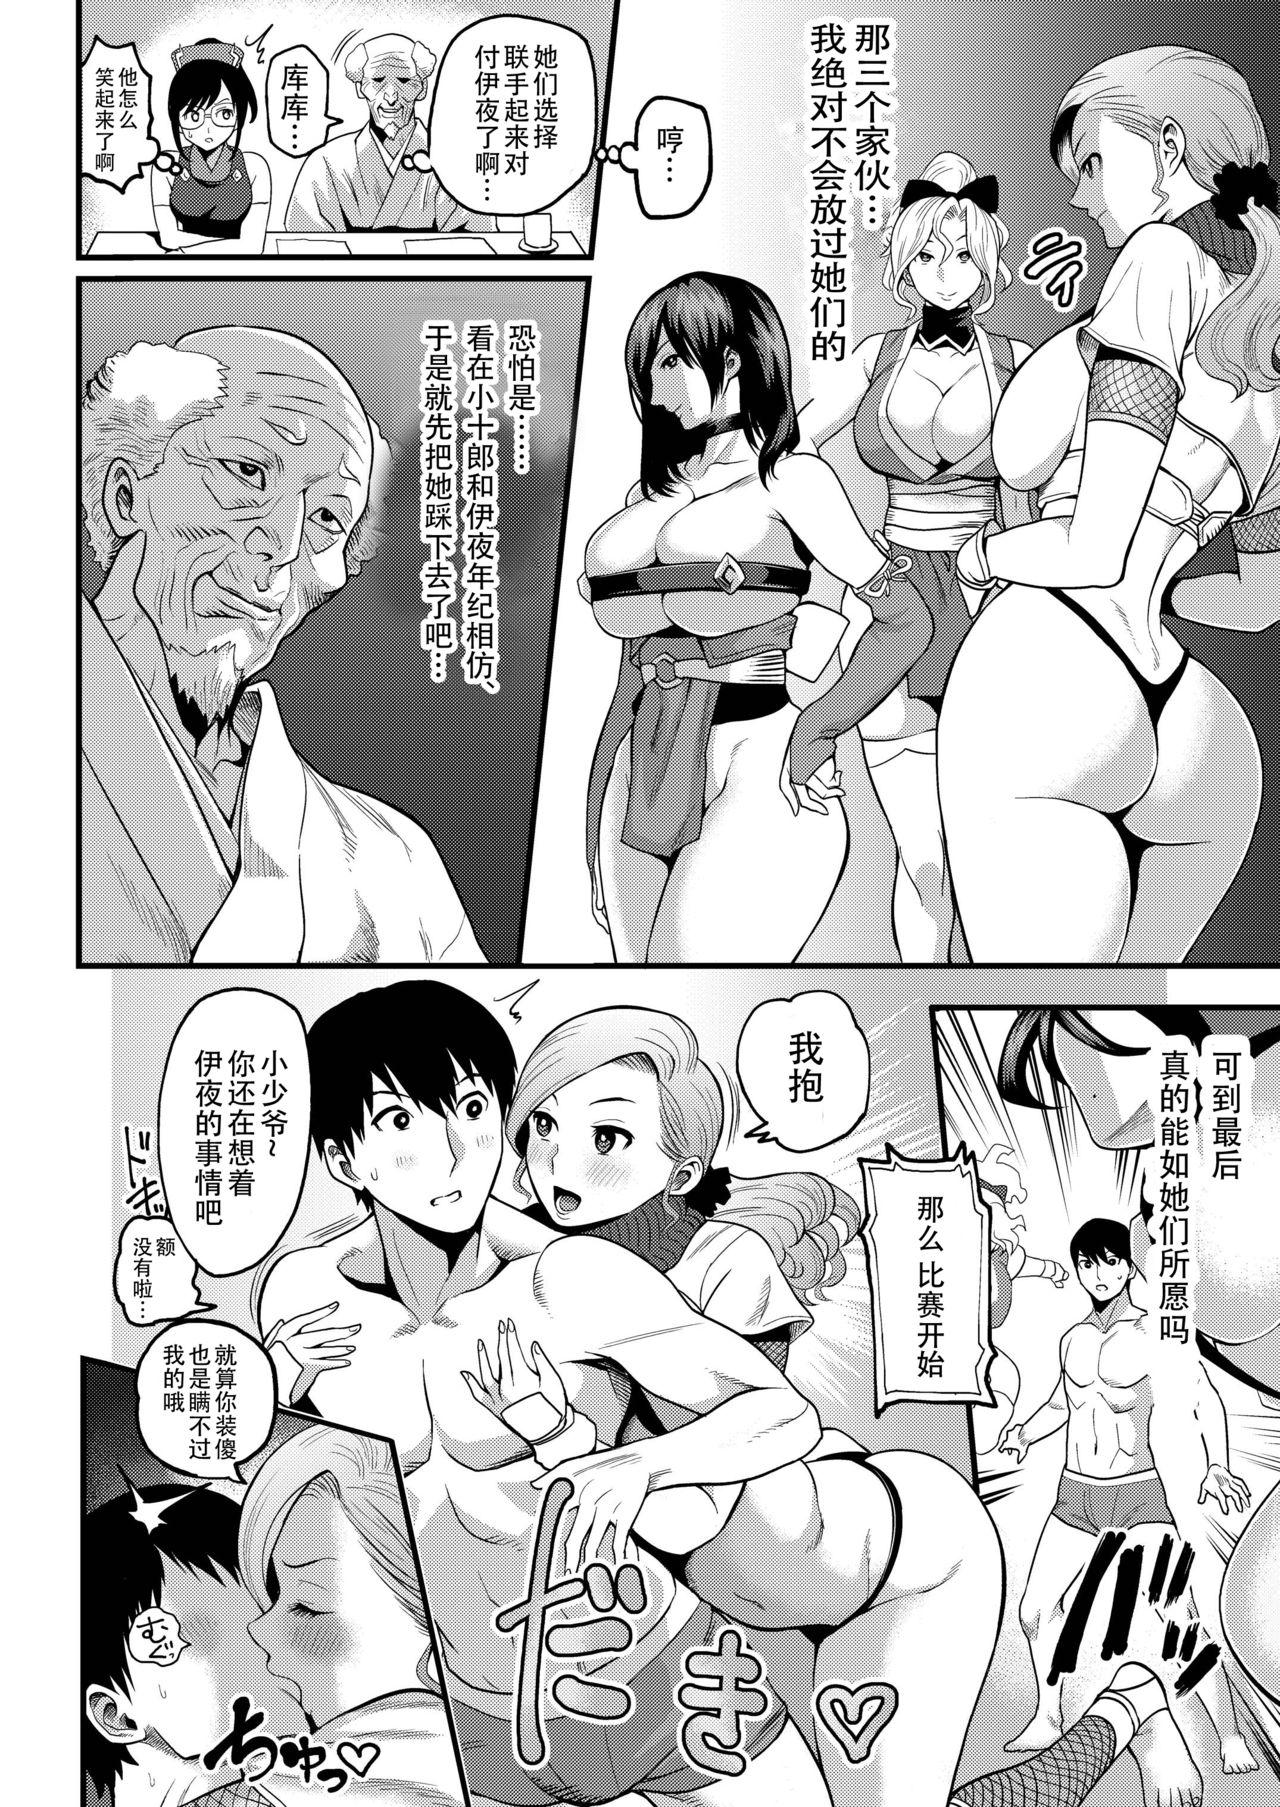 Girlongirl Oideyo! Kunoichi no Sato San - Original Barely 18 Porn - Page 7